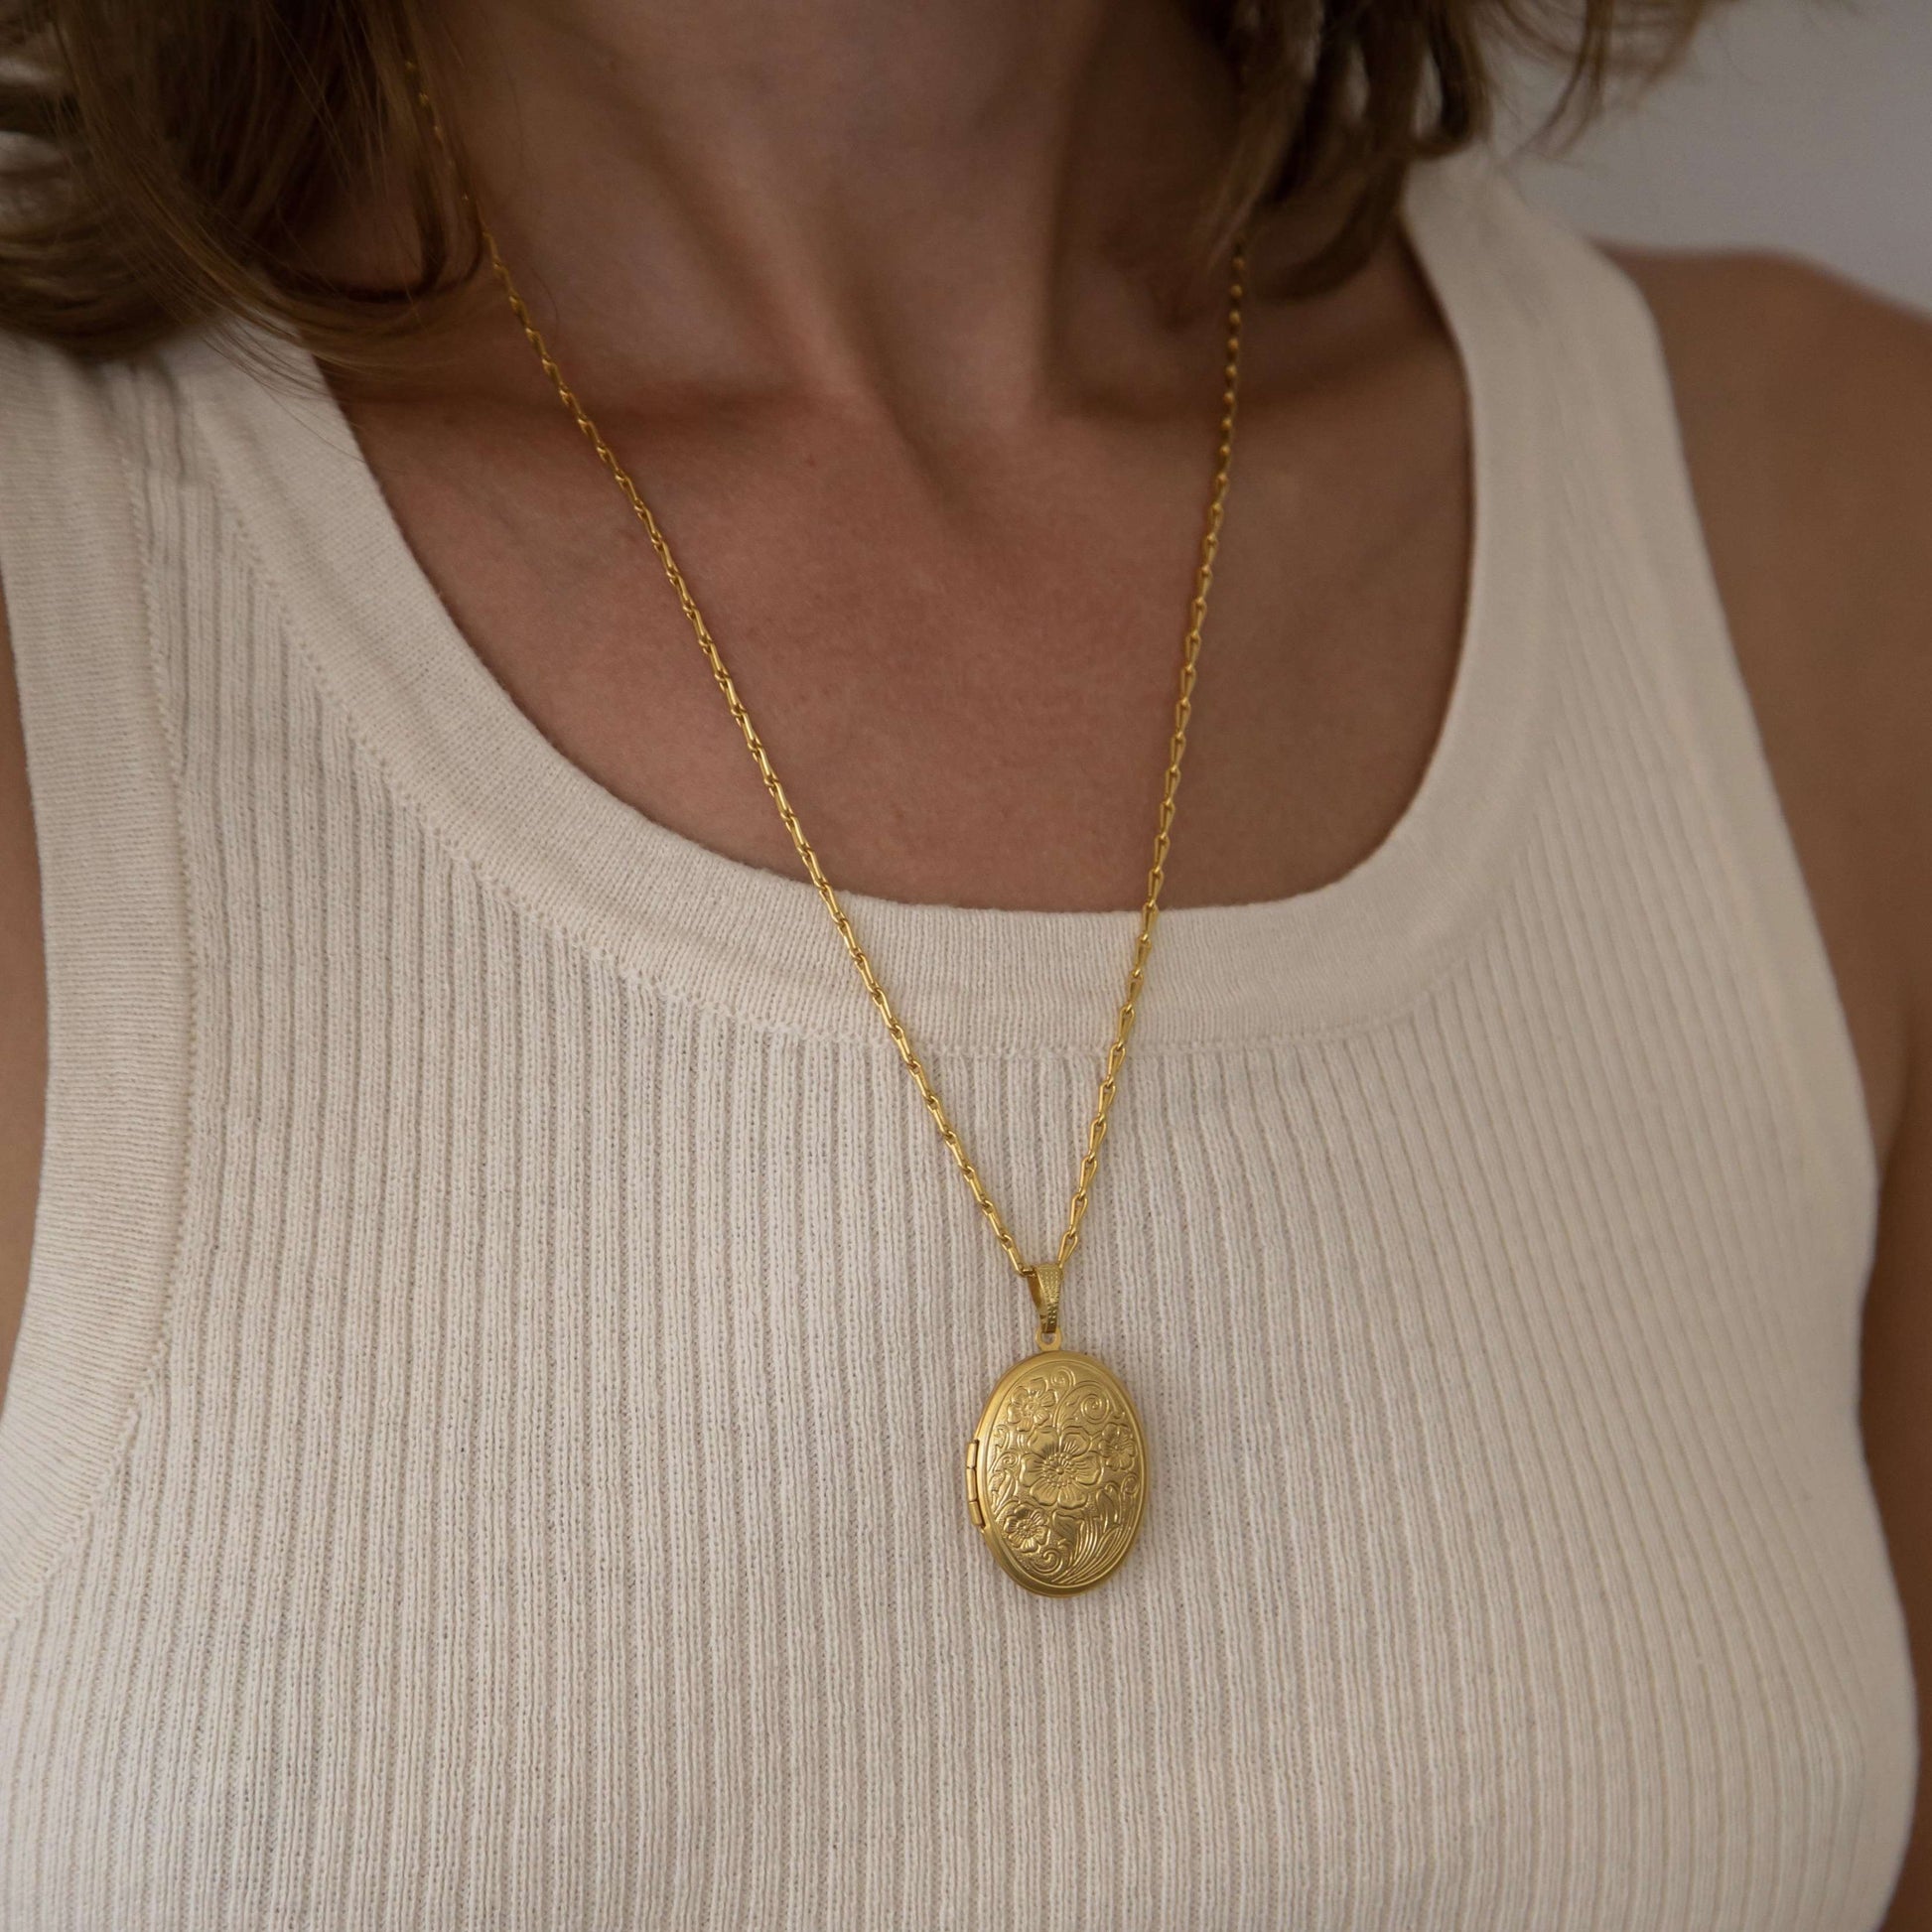 Jonesy Wood:Necklace:Marine Locket Necklace